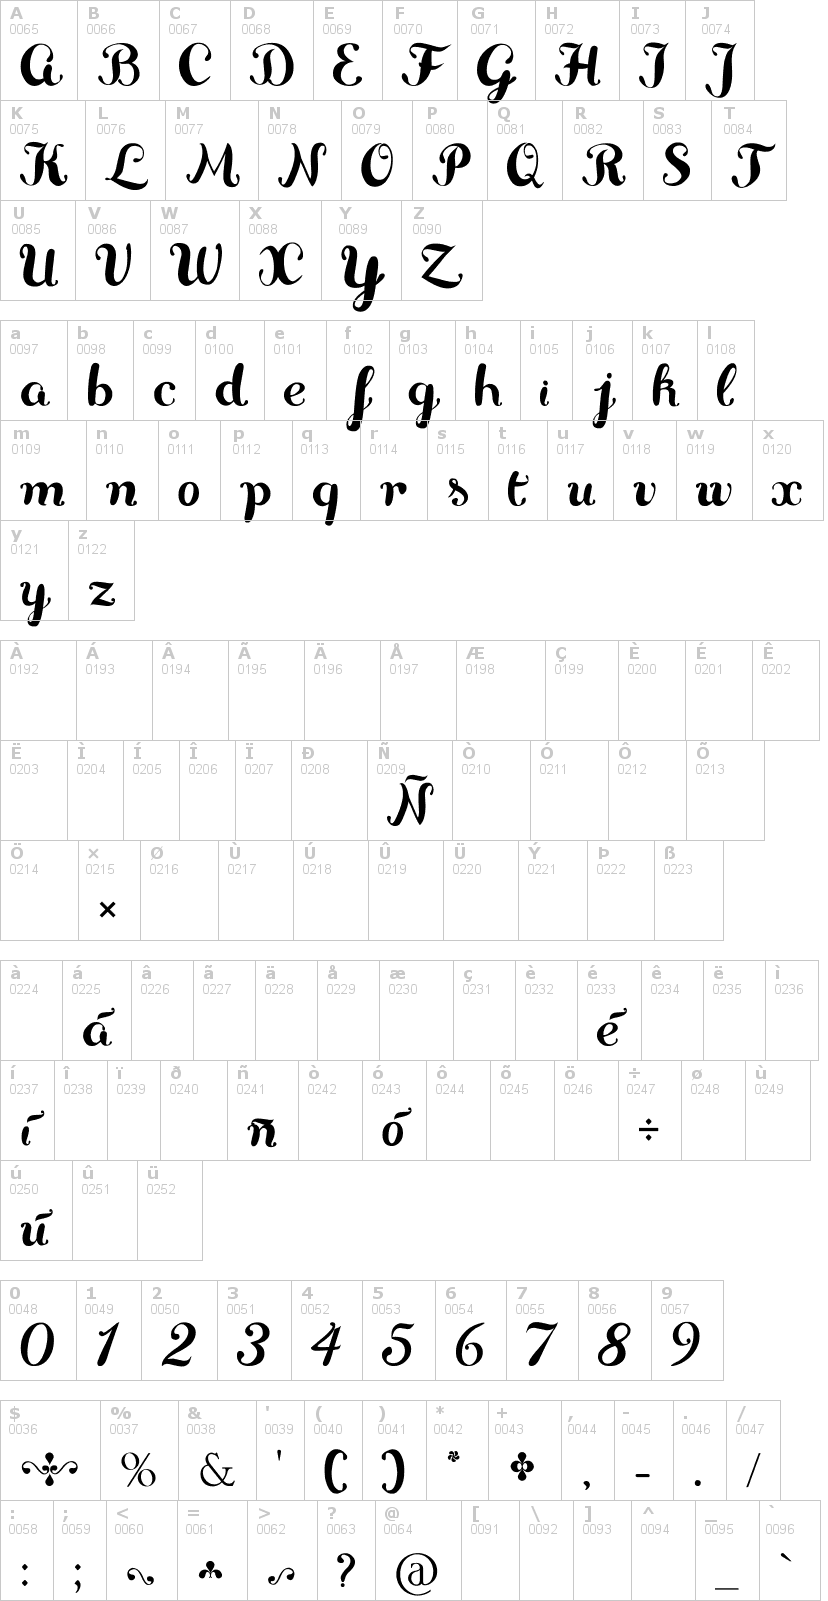 Lettere dell'alfabeto del font delikatessen con le quali è possibile realizzare adesivi prespaziati